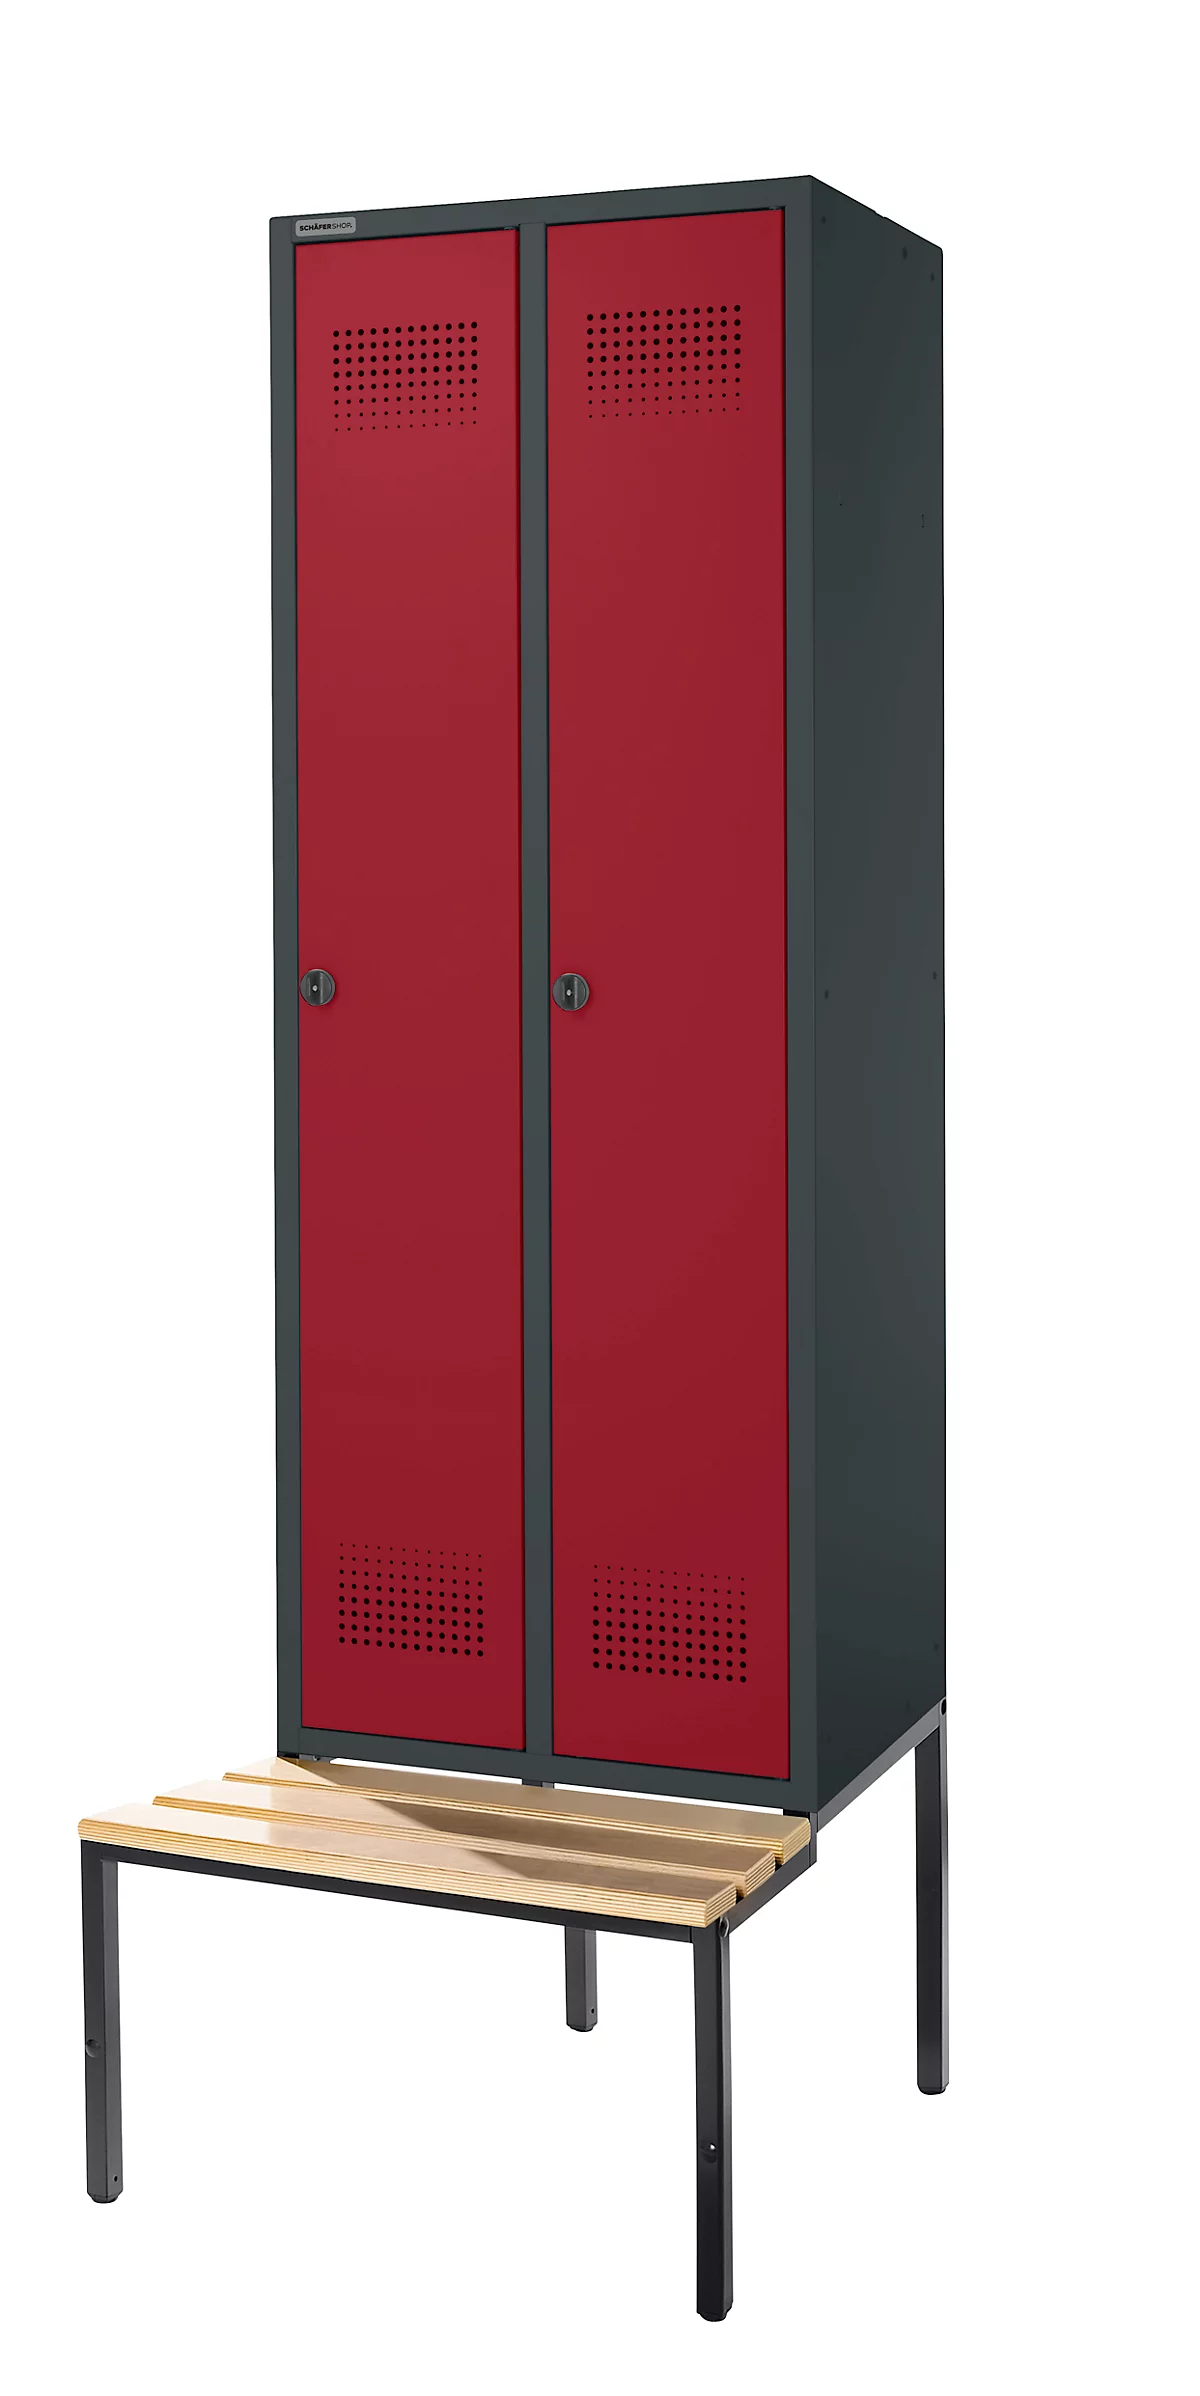 Schäfer Shop Genius Taquilla con banco, 2 compartimentos, anchura compartimento 300 mm, cierre de pasador giratorio de seguridad, antracita/rojo rubí